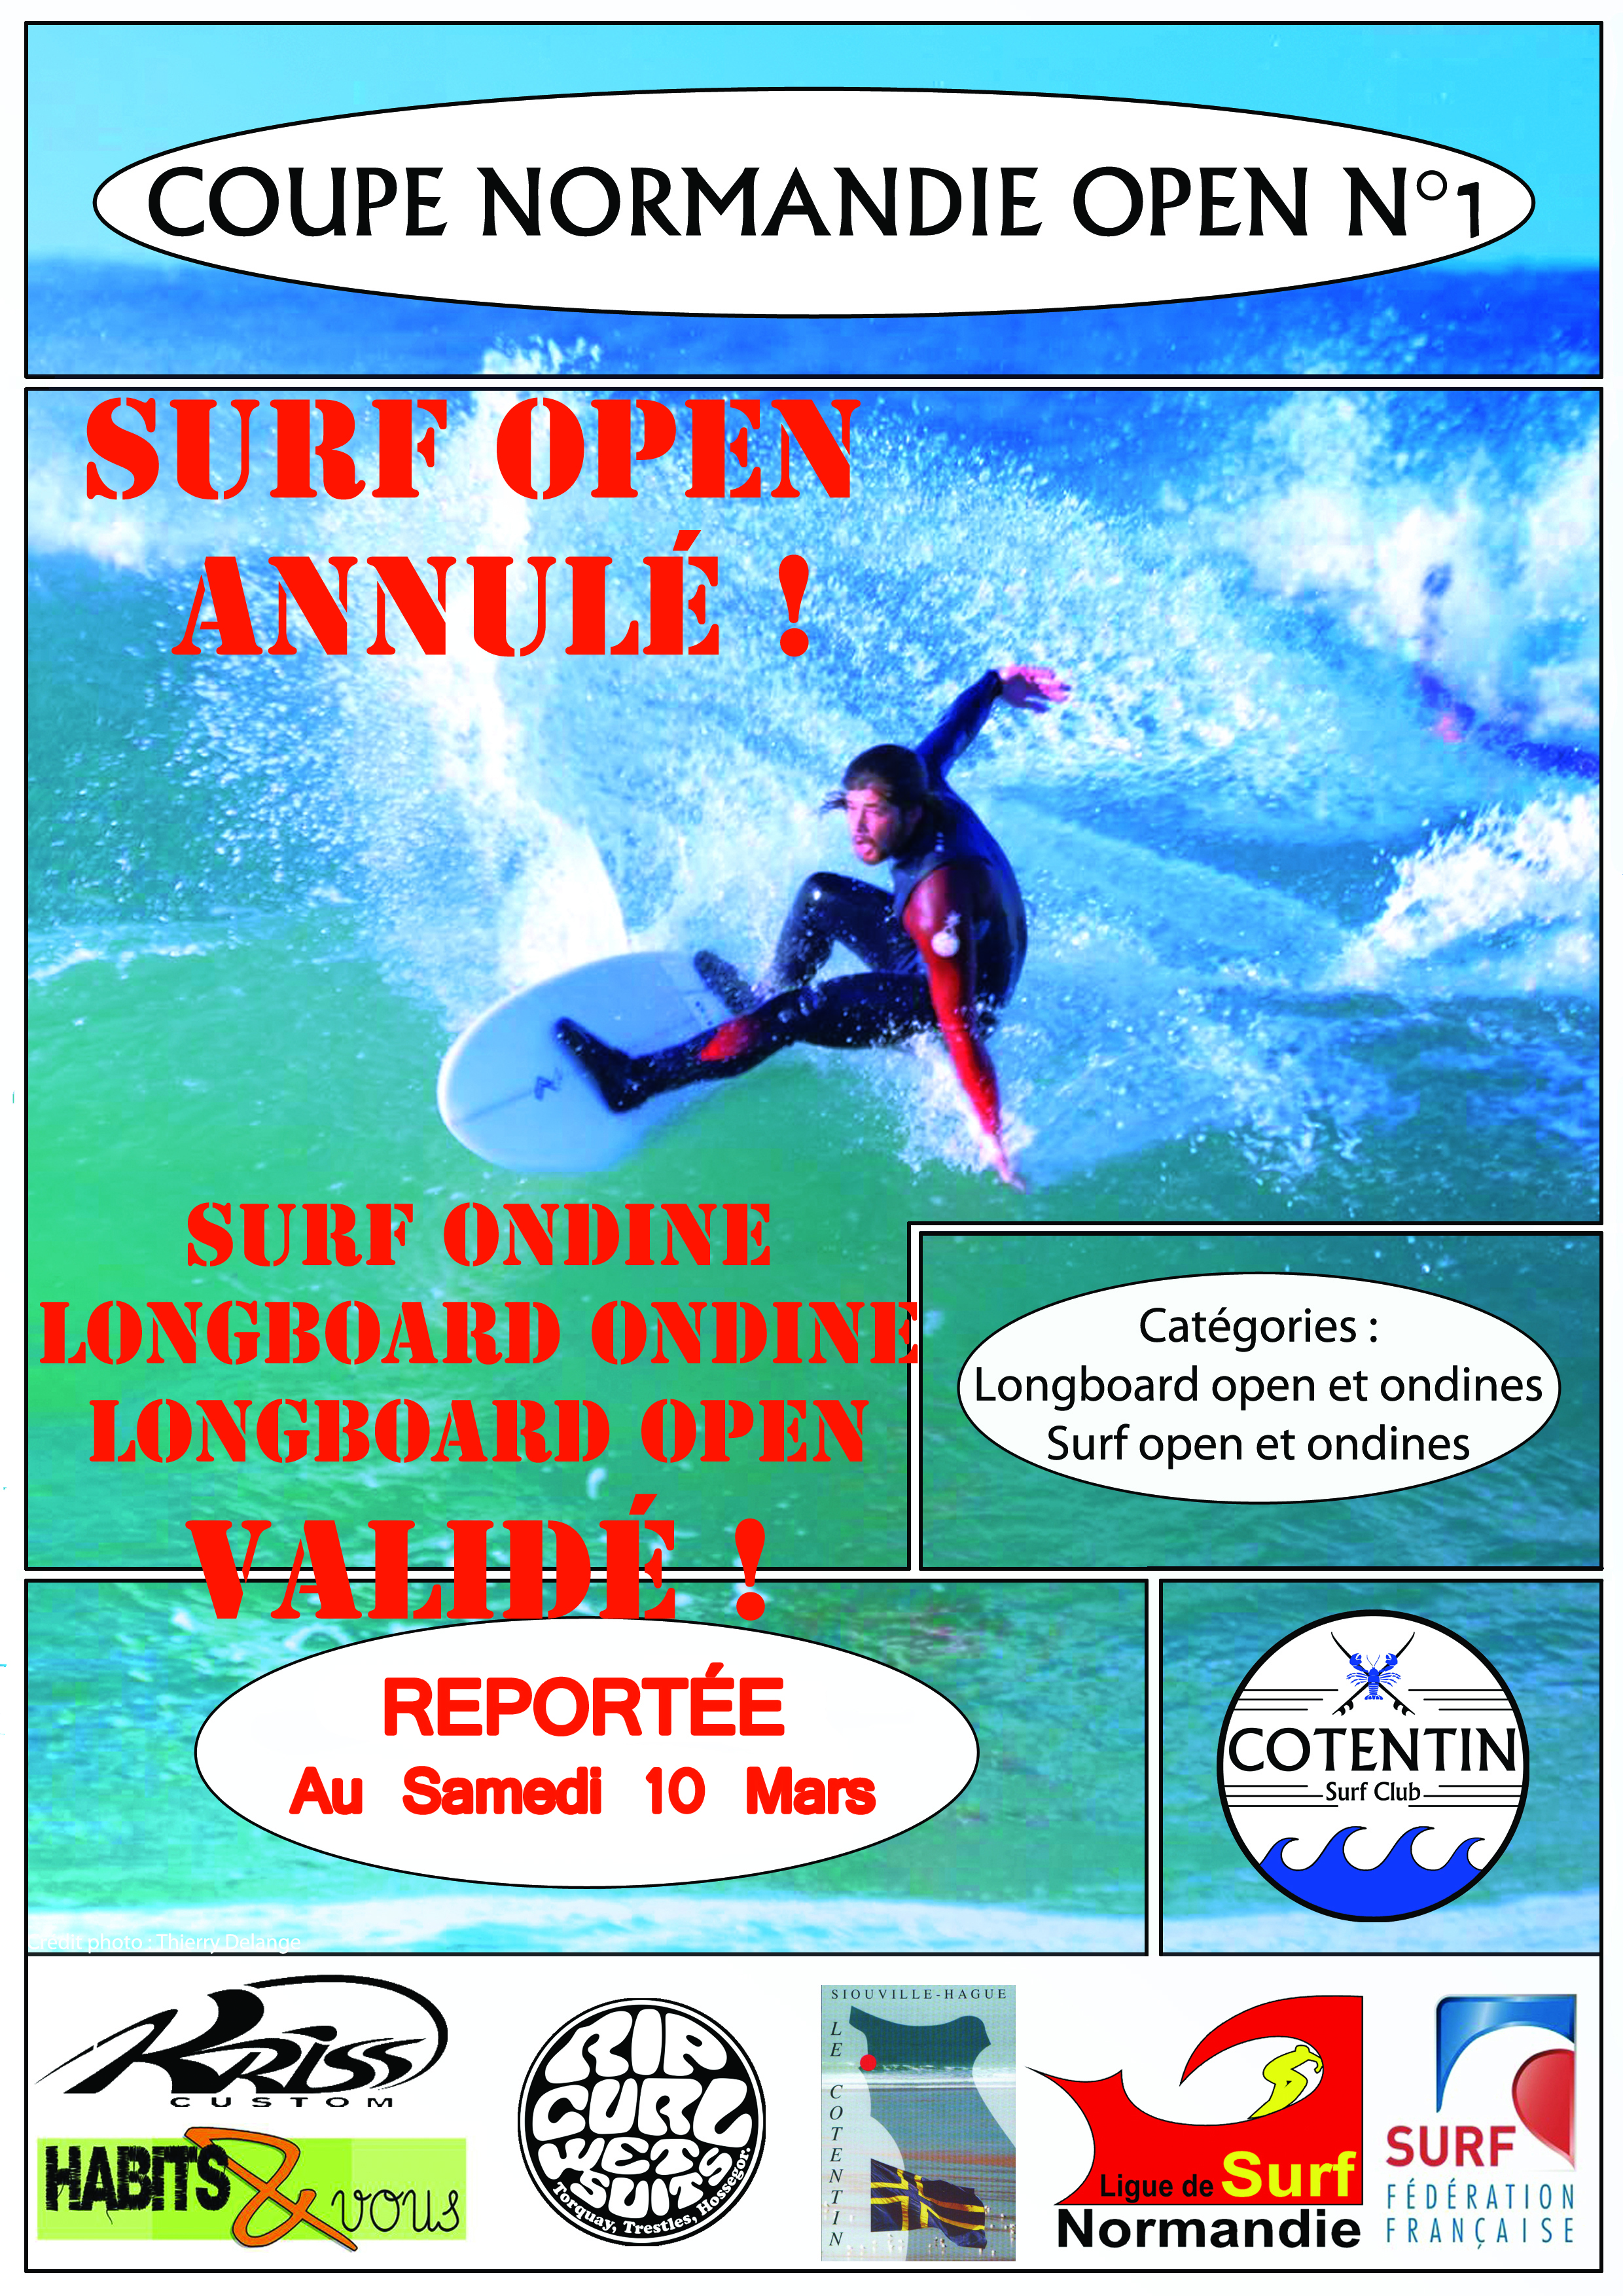 Coupe Normandie N°1 catégorie SURF OPEN ANNULÉ